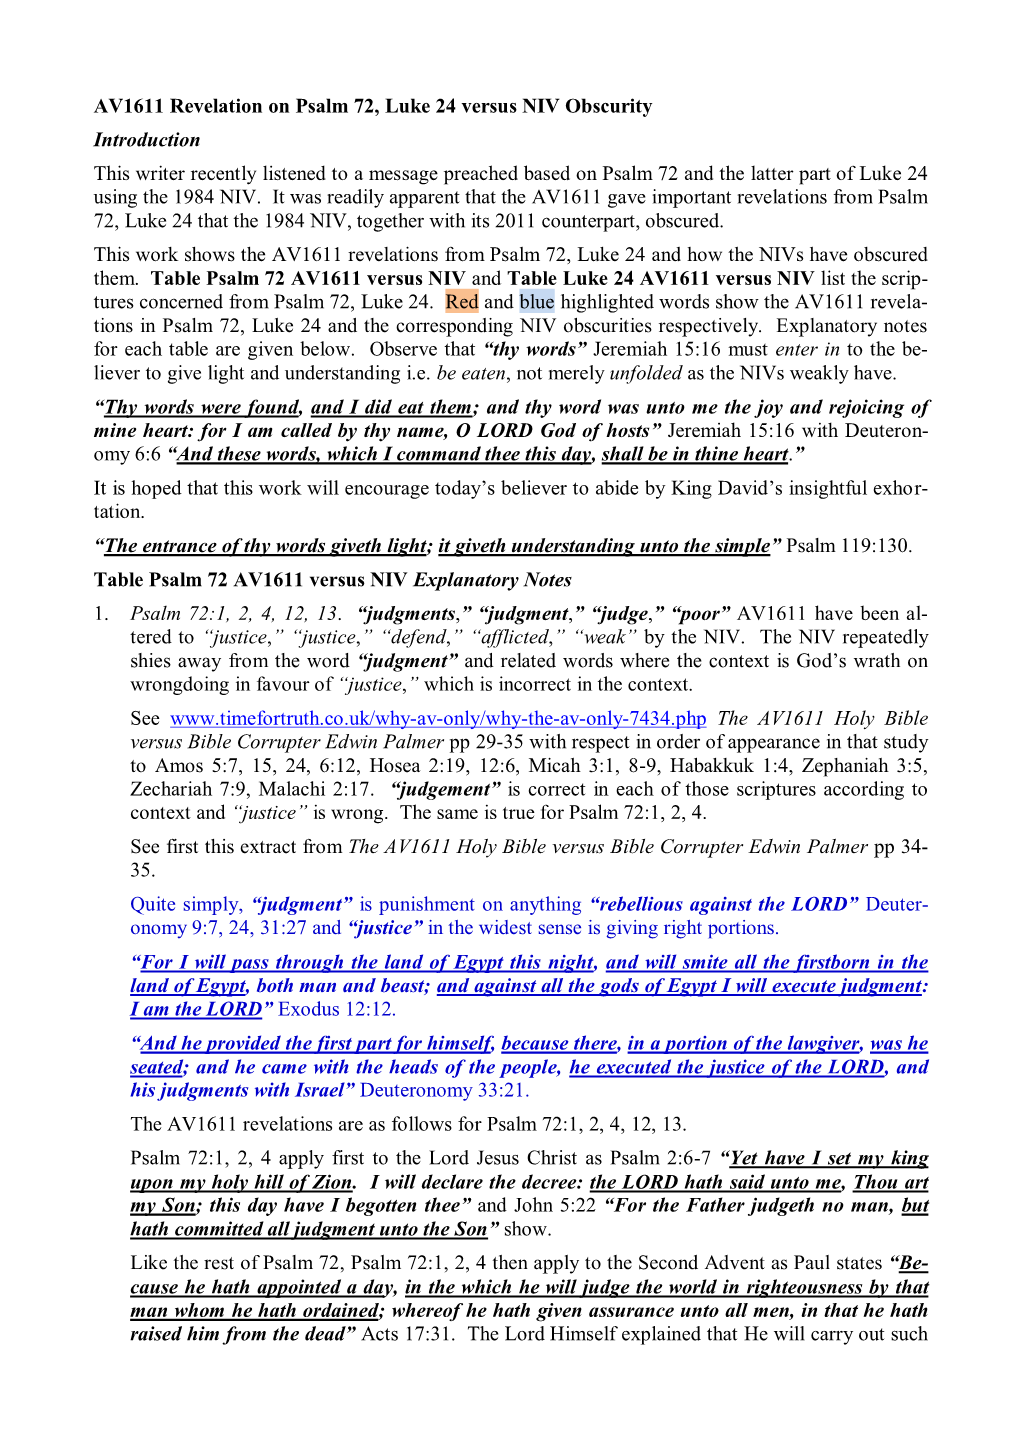 AV1611 Revelation on Psalm 72, Luke 24 Versus NIV Obscurity